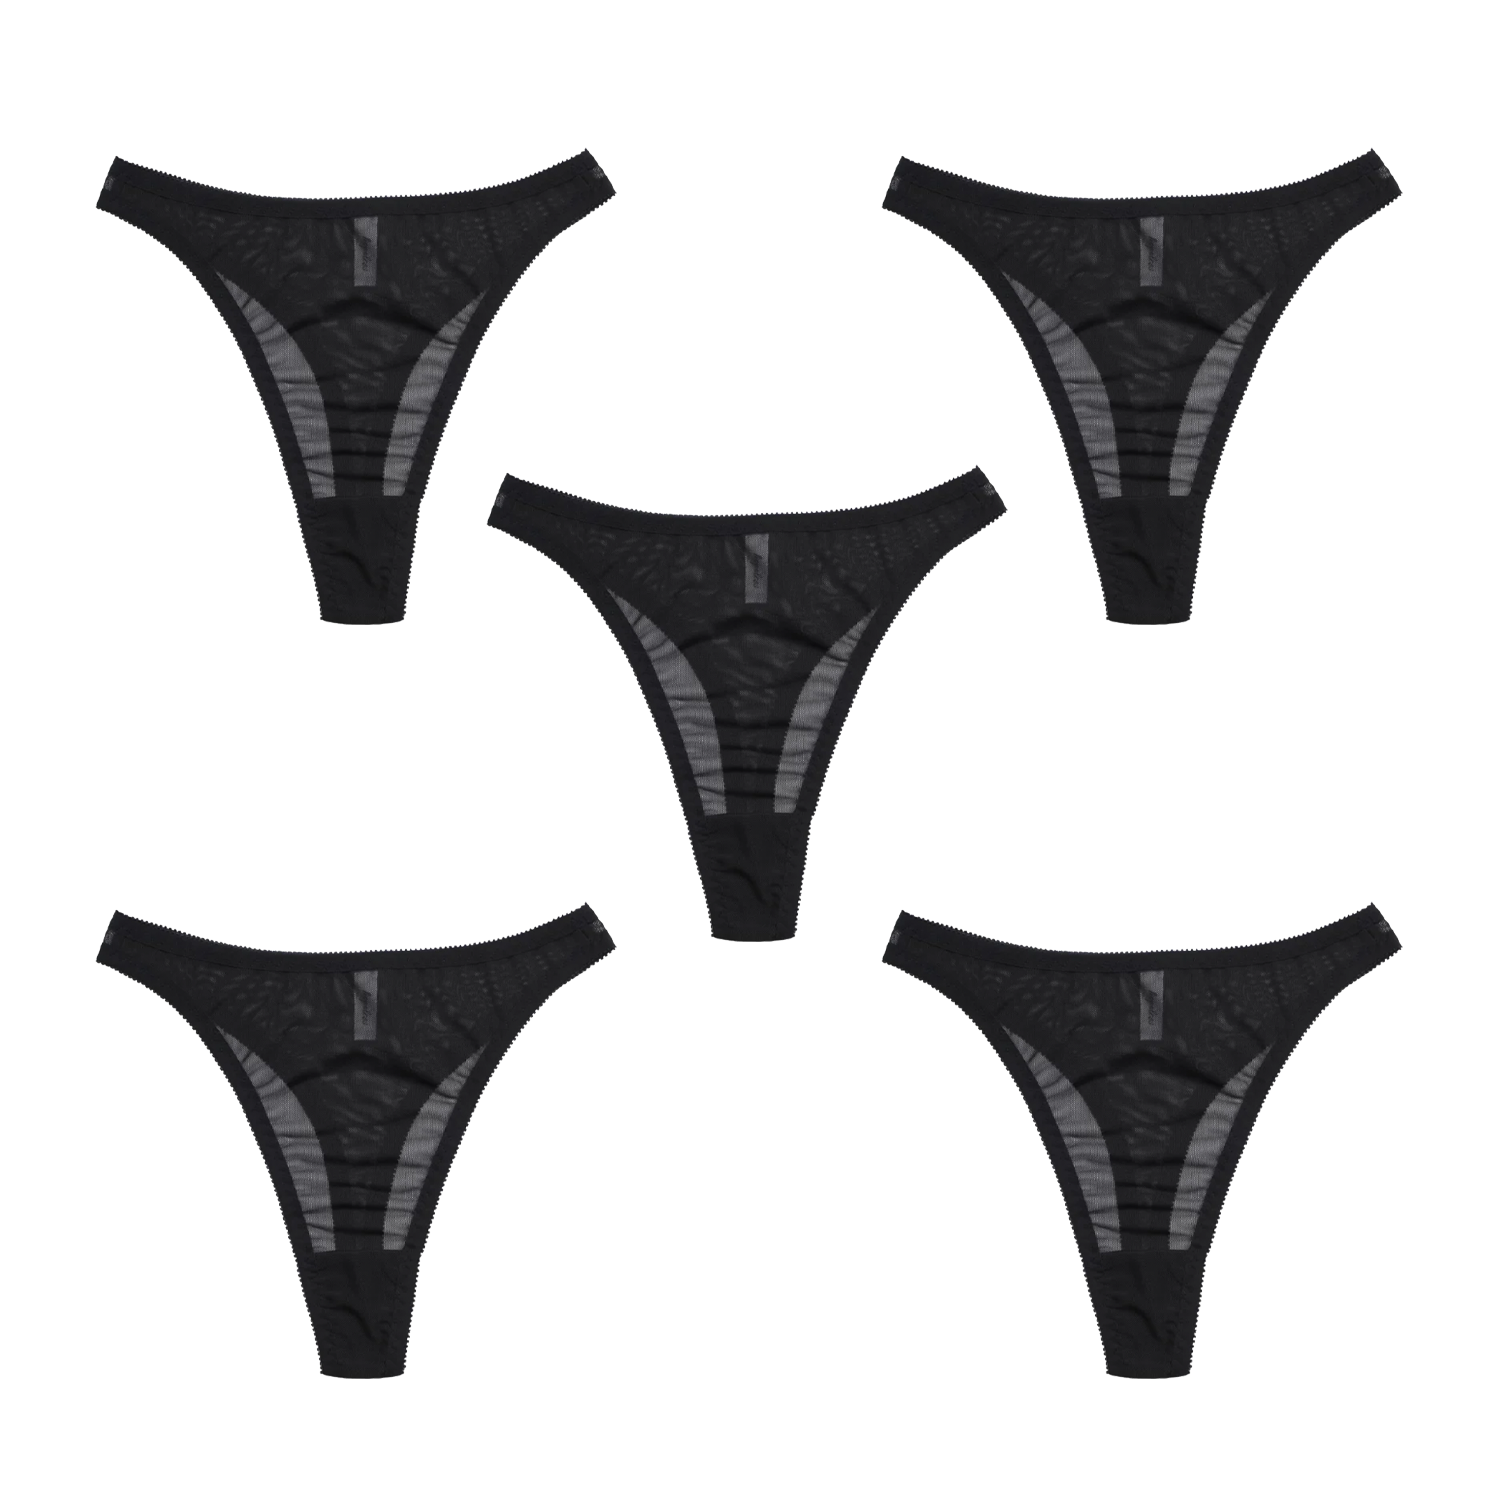 Black Modal Underwear  Ethical Lingerie Made in Australia by Hopeless –  Hopeless Lingerie